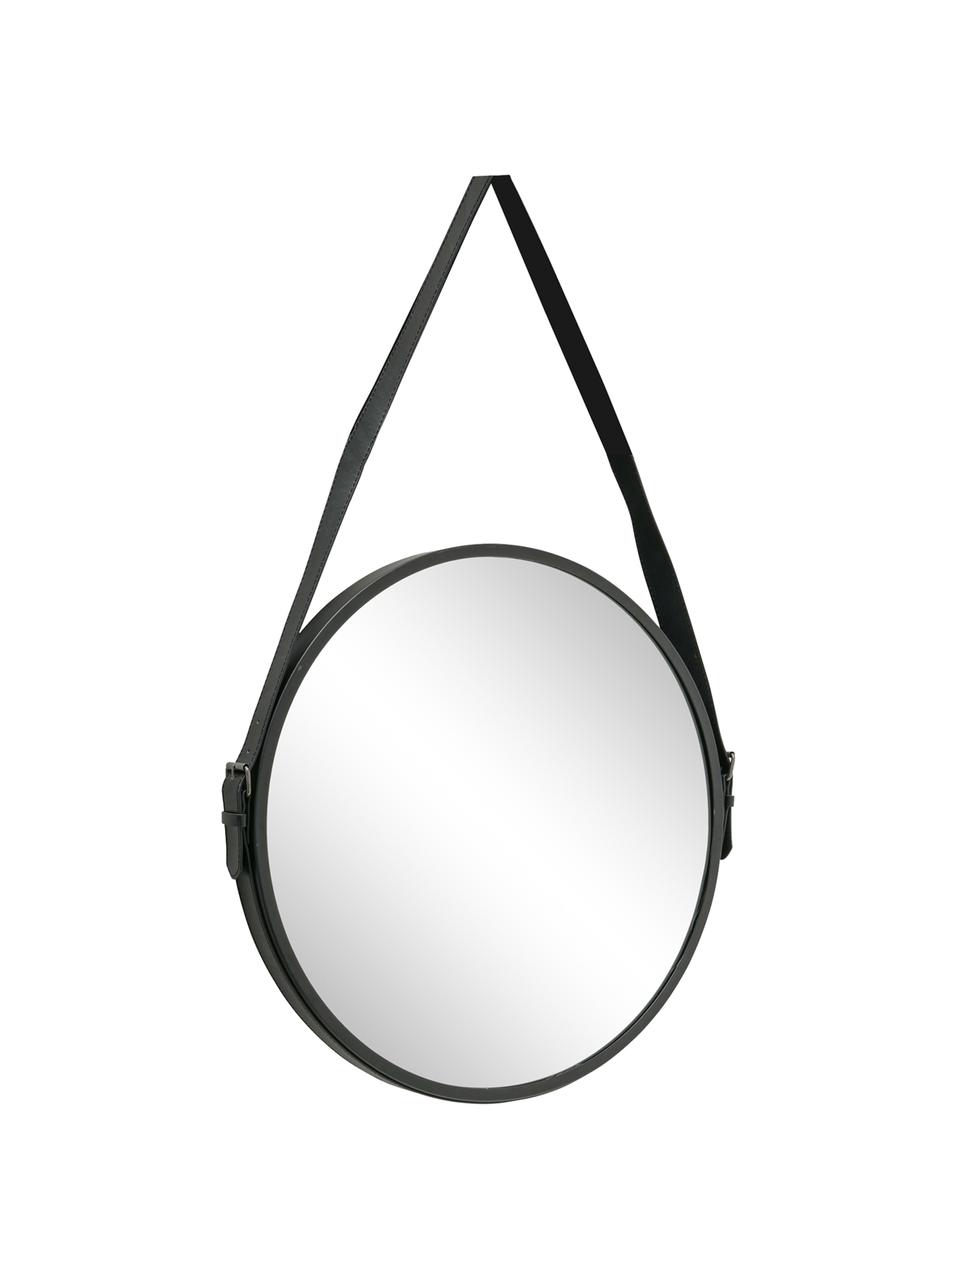 Okrągłe lustro ścienne Paso, Metal, szkło lustrzane, Czarny, S 48 x W 73 cm